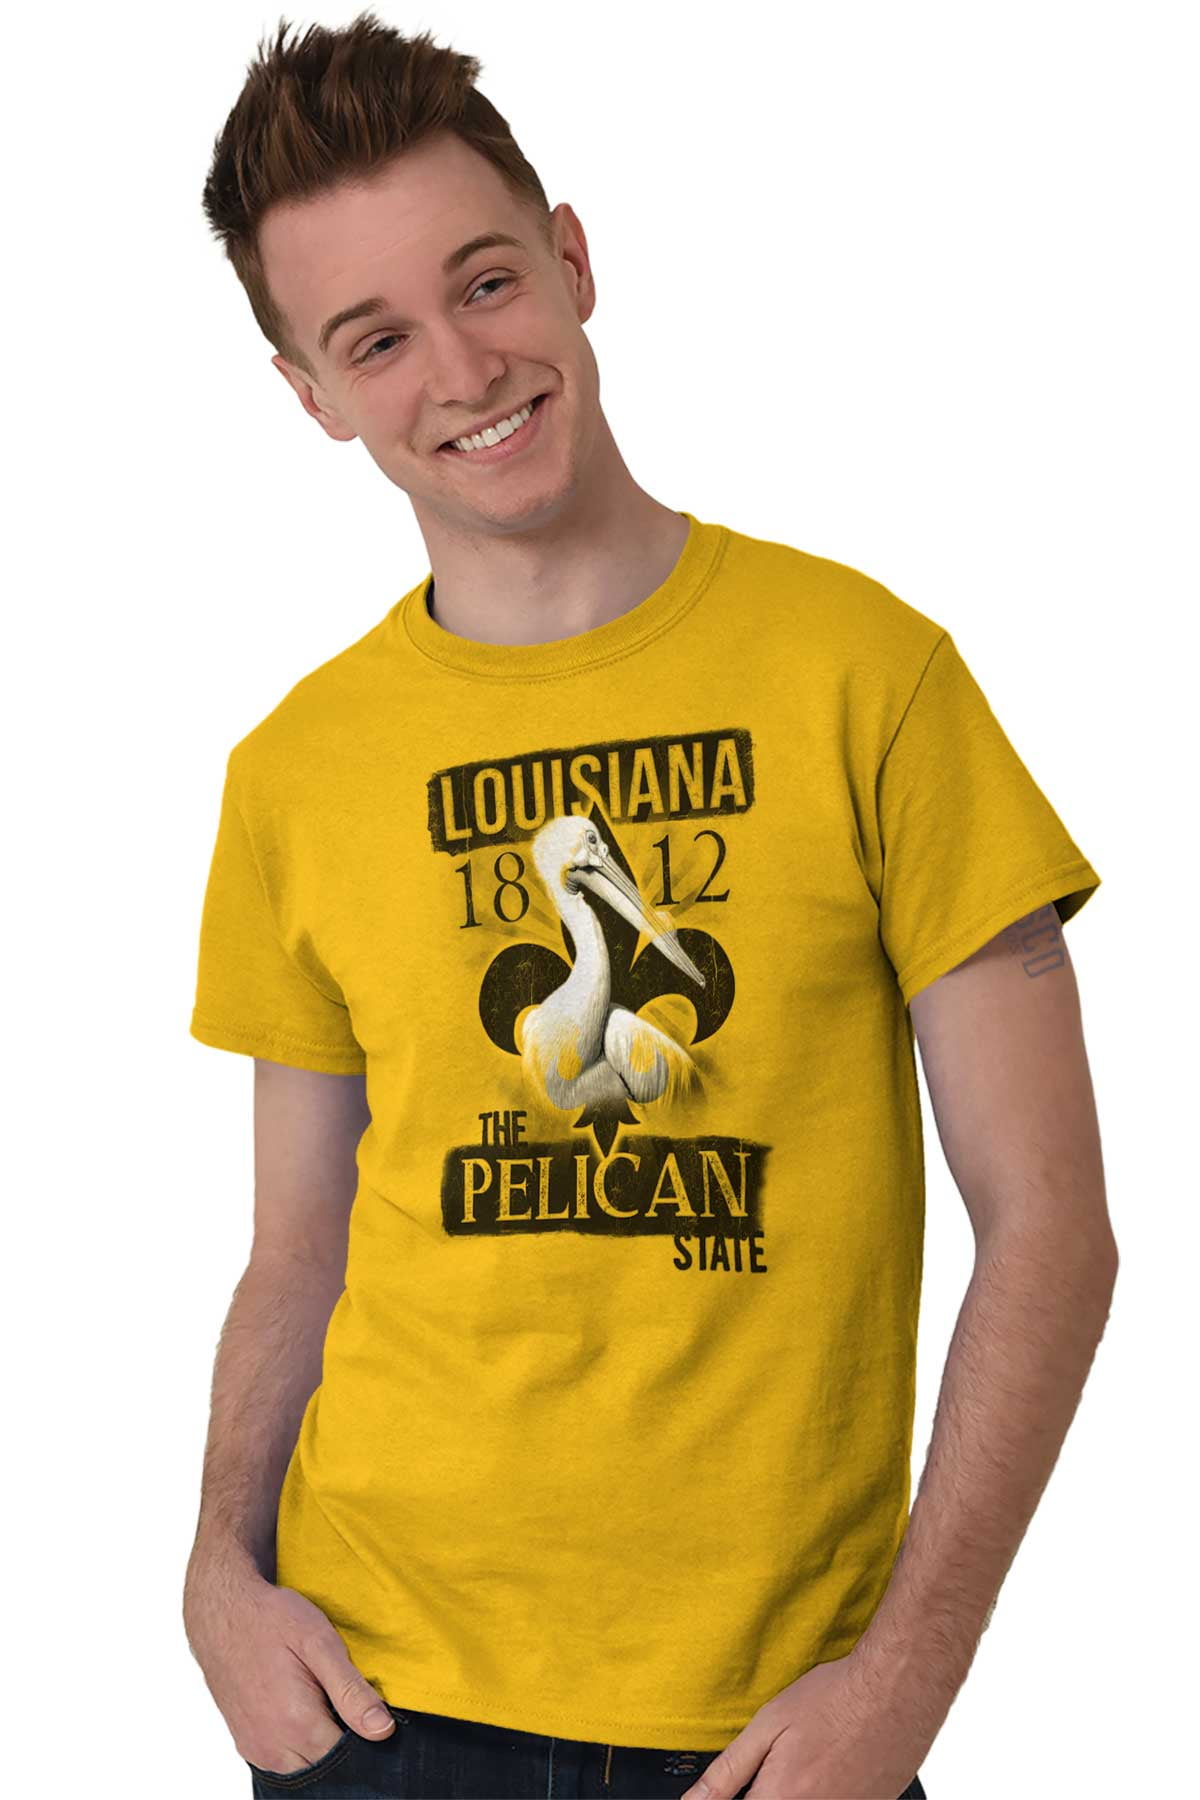 spirit animal shirt Always be yourself shirt Short-Sleeve Unisex T-Shirt pelican shirt pelican gift